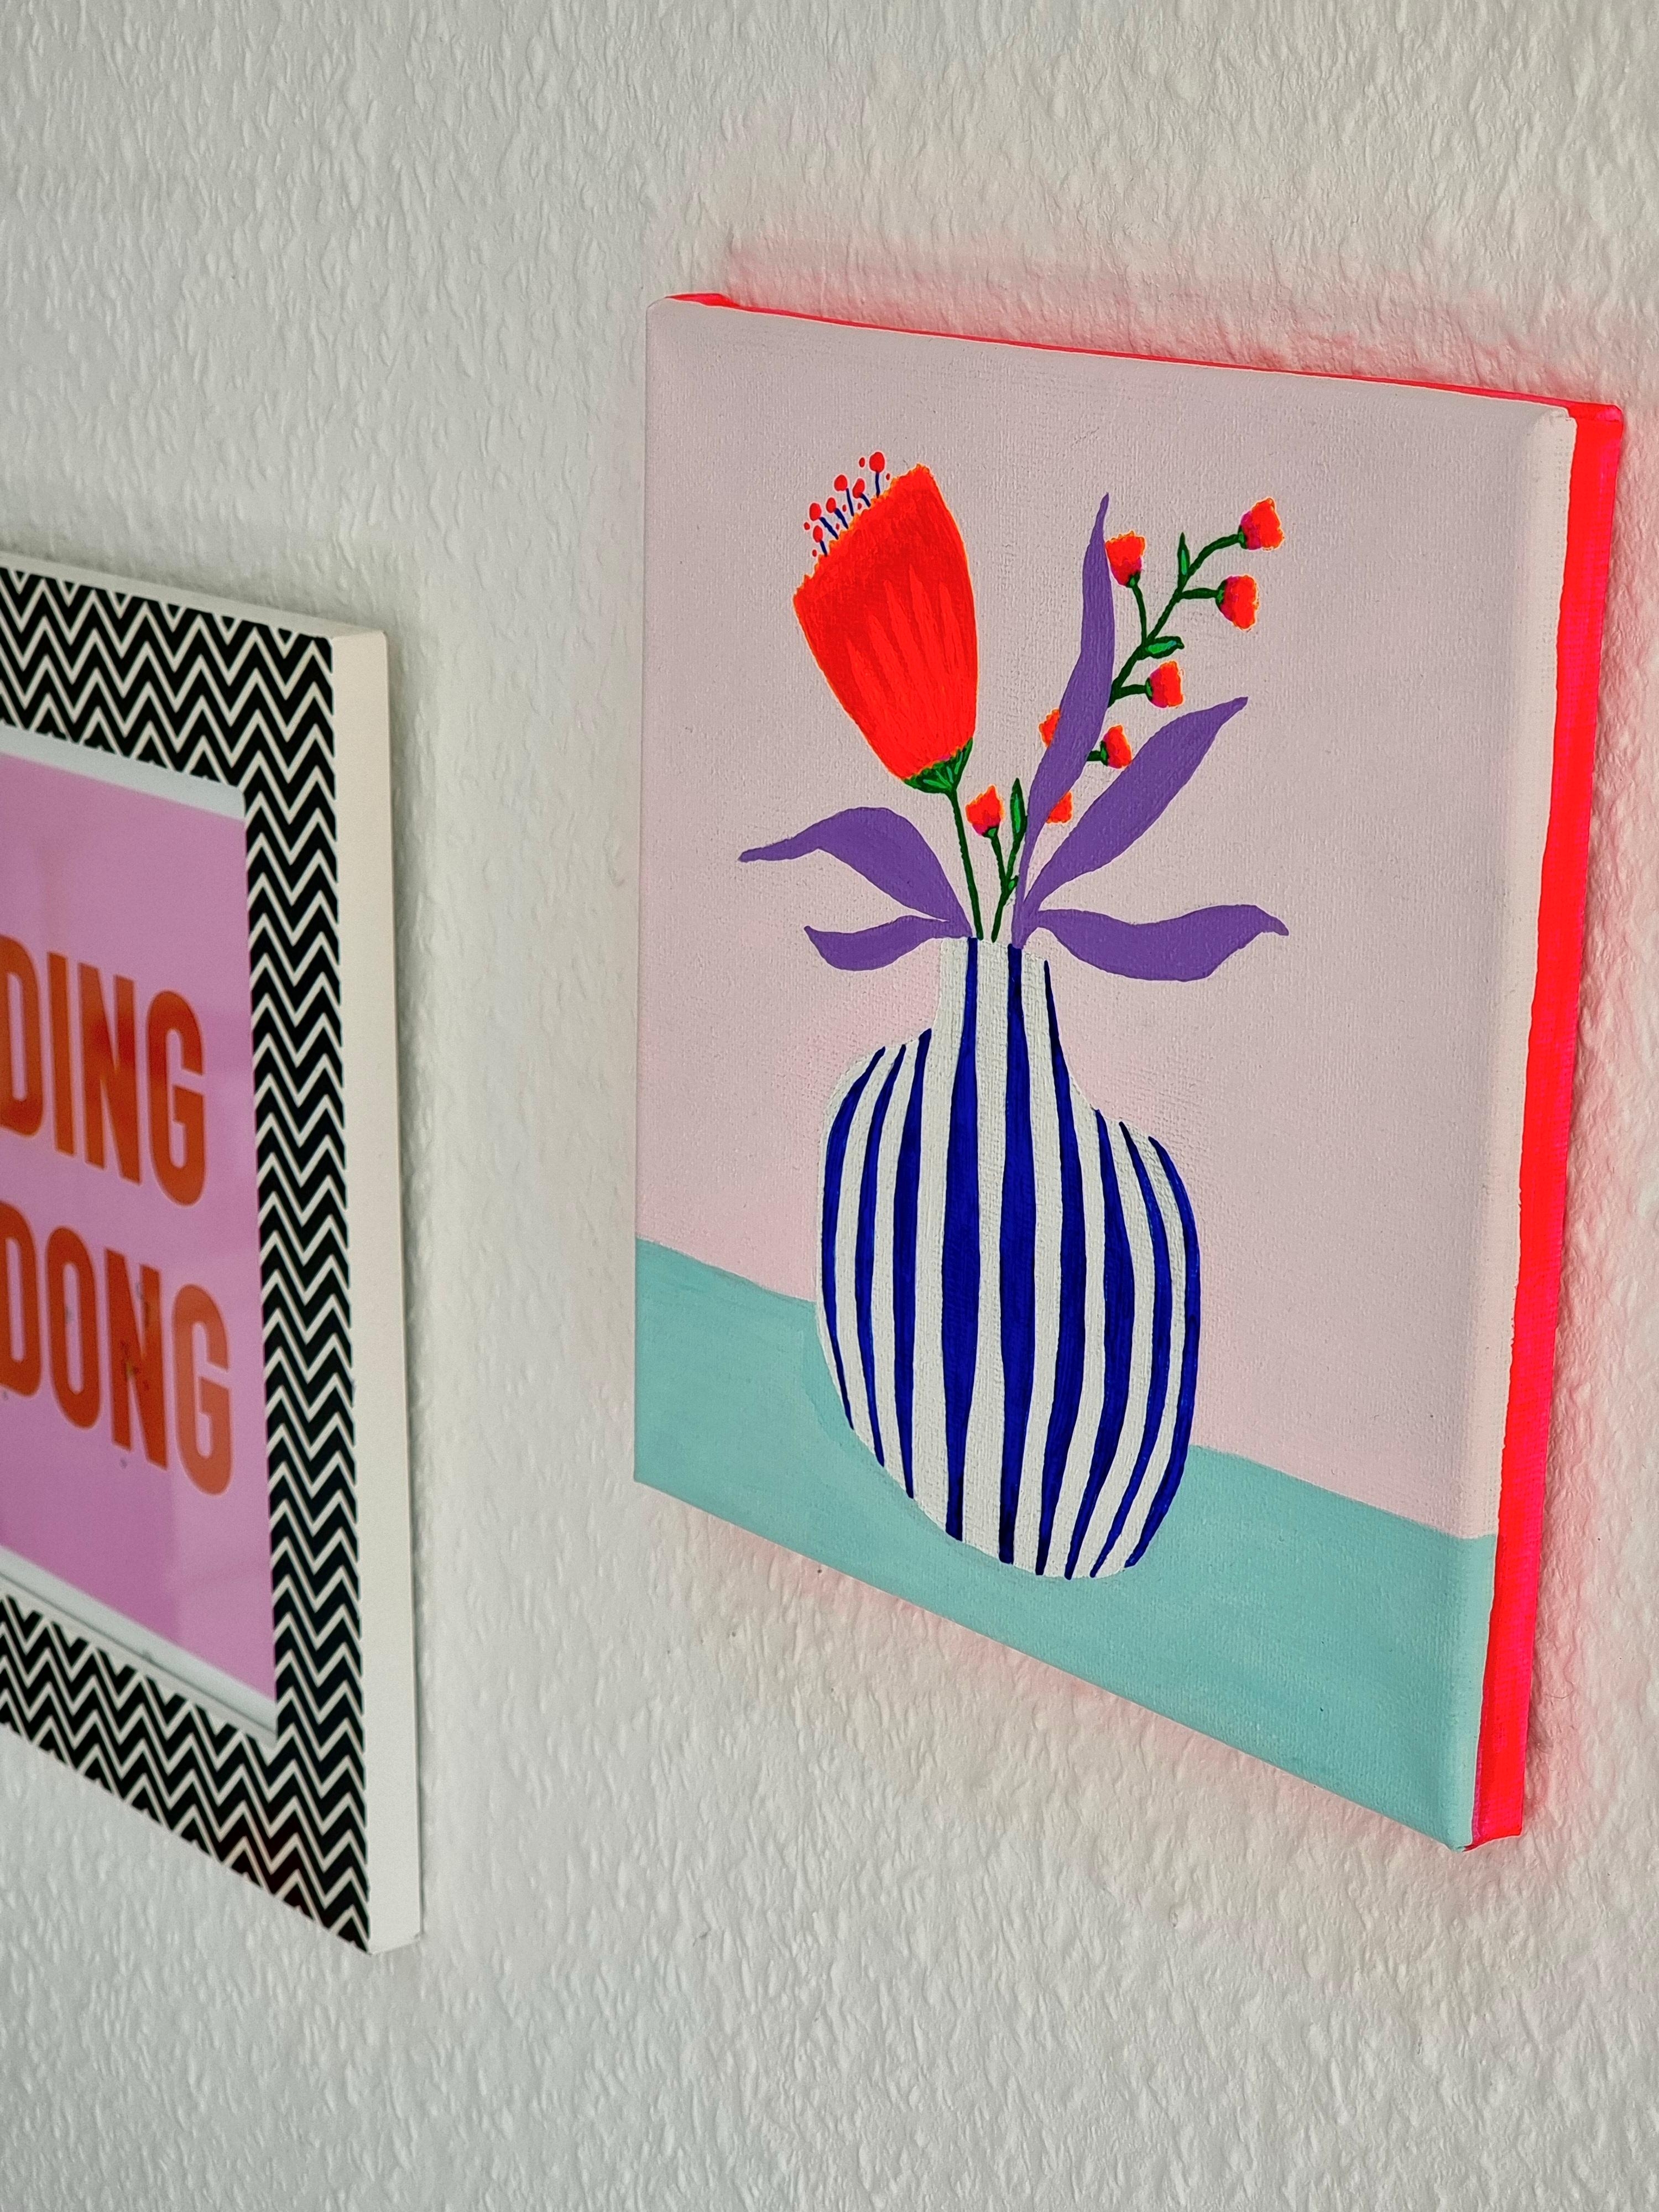 #Frühling is in the house ✌️ #Handmade #Diy #Wanddeko #Acryl #paintingart im #Wohnzimmer #Blumen #Neonliebe und #Pastell #Interior 